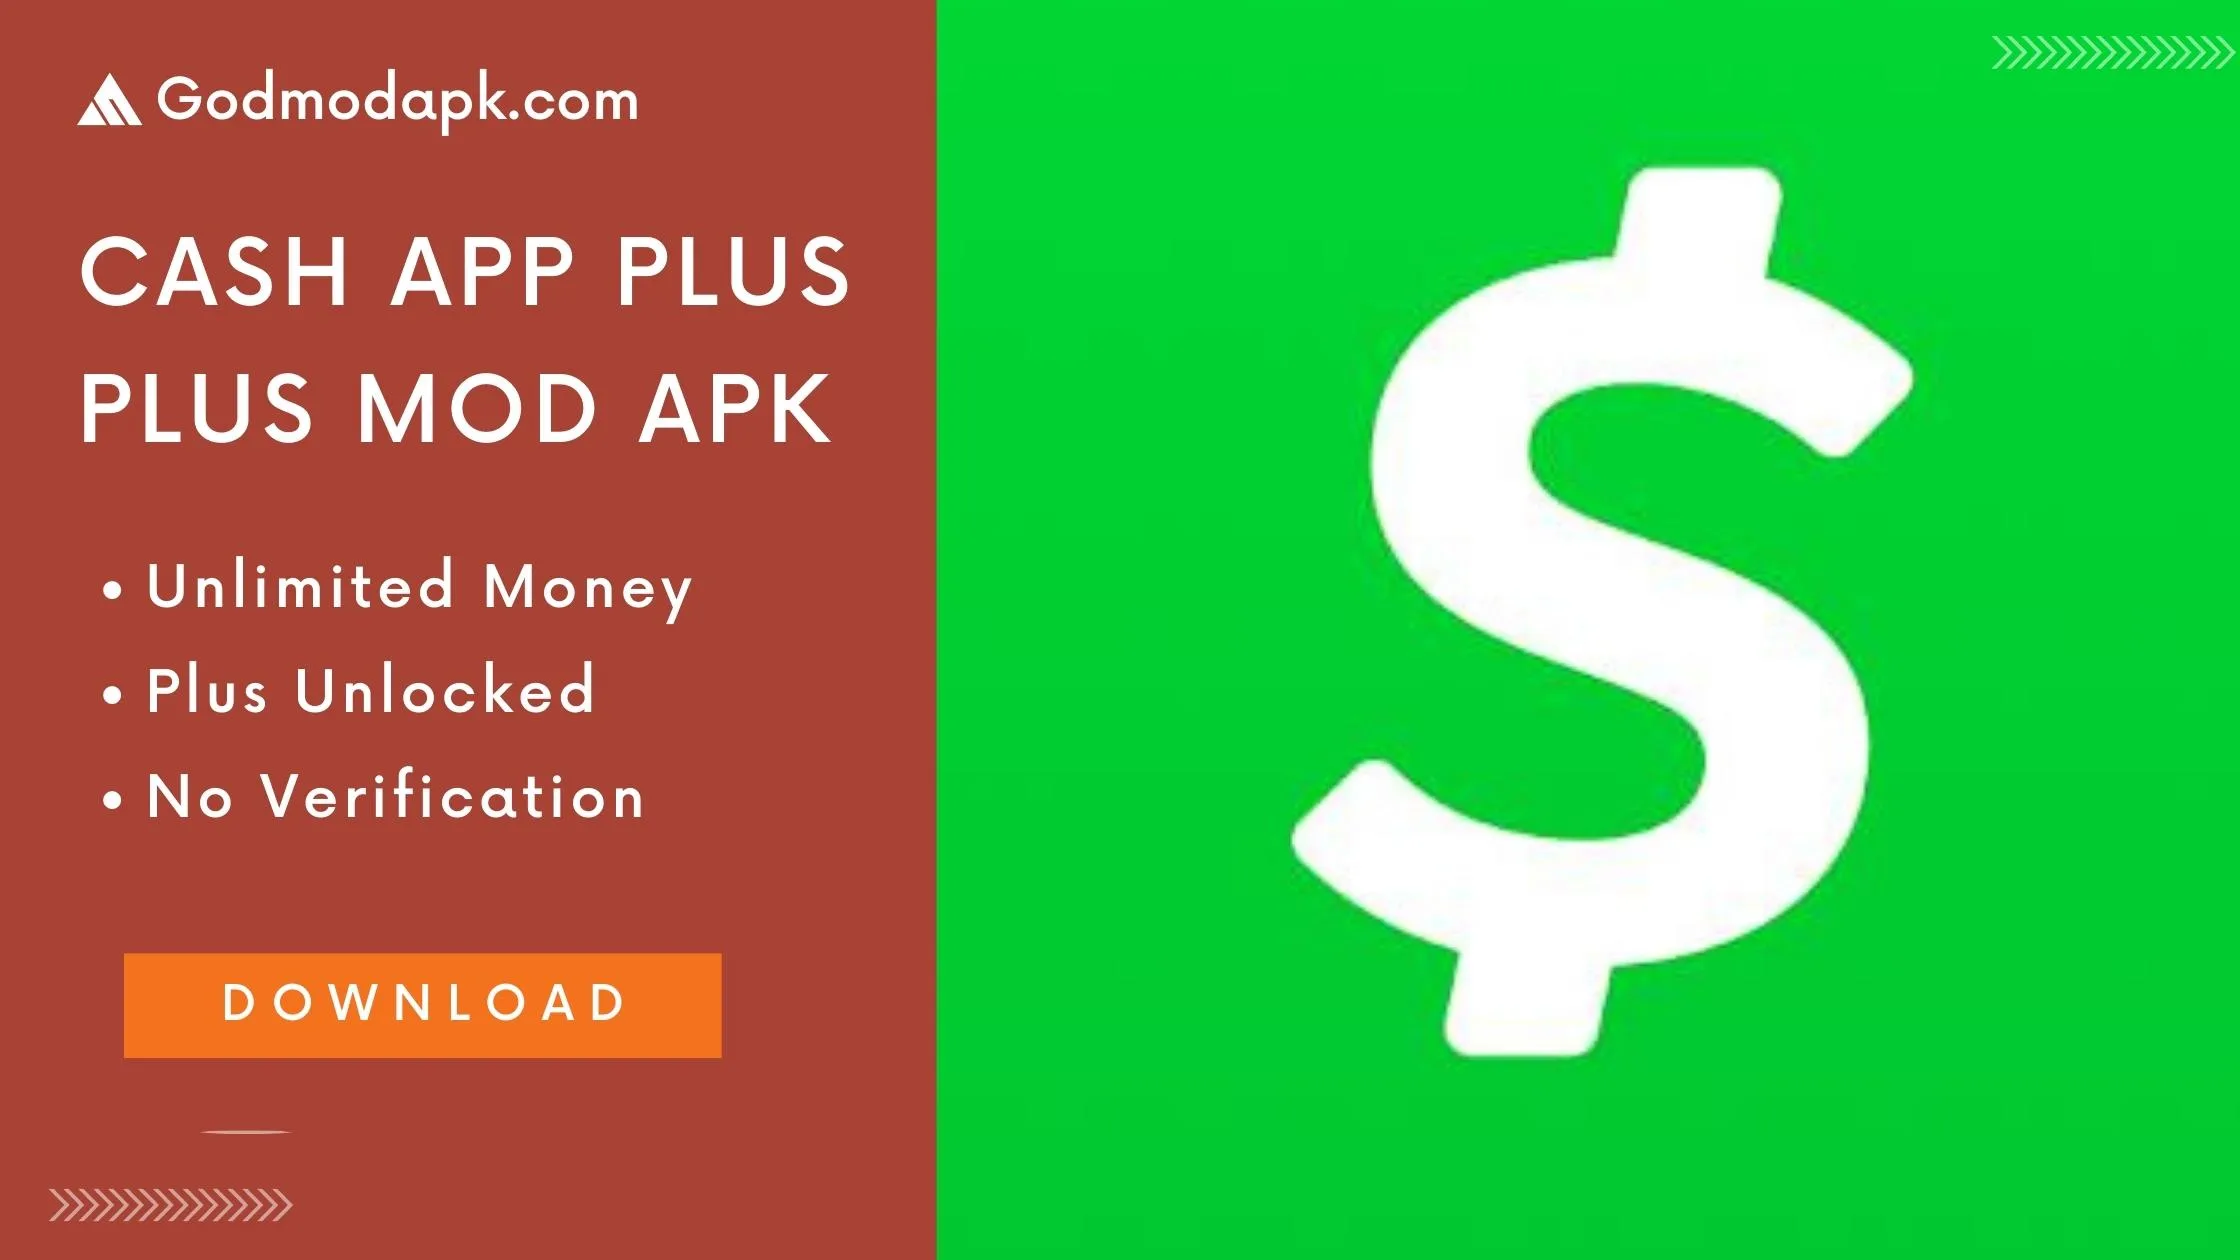 Cash App Plus Plus Mod Apk Download